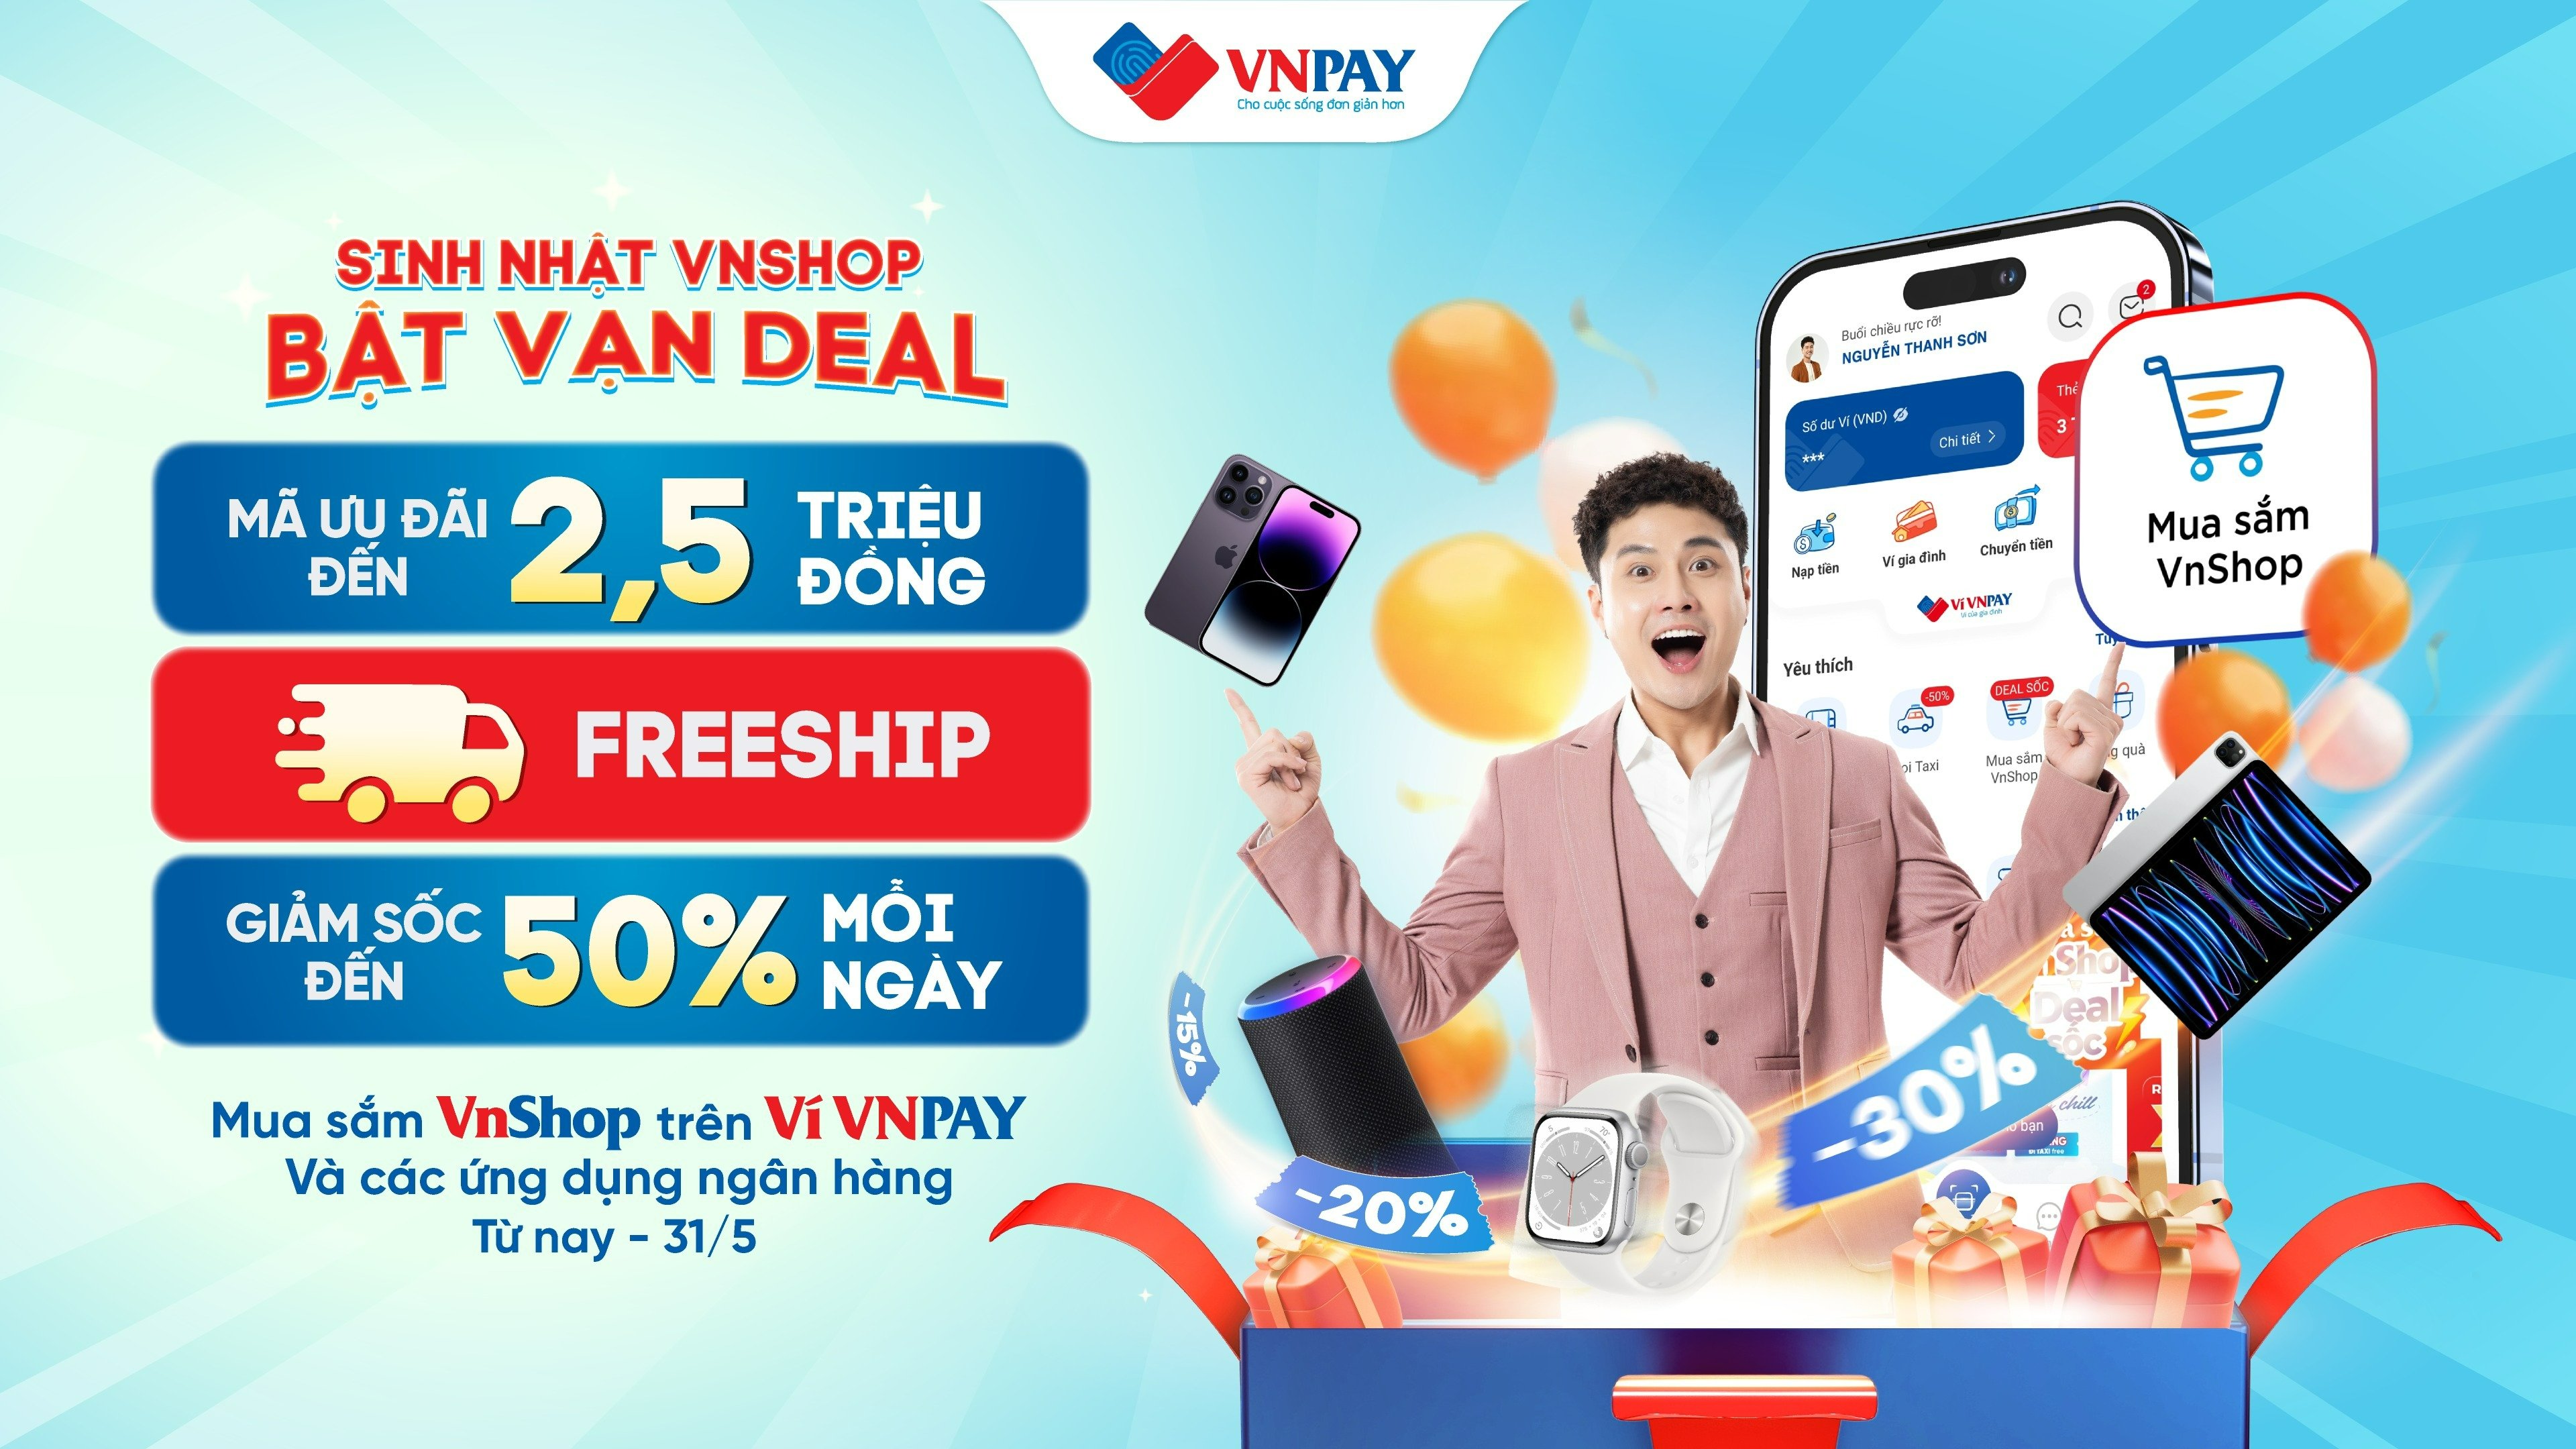 Từ nay đến 31/5, tính năng Mua sắm VnShop trên ví VNPAY và ứng dụng ngân hàng bùng nổ chương trình “SINH NHẬT VNSHOP BẬT VẠN DEAL” với ngàn ưu đãi khủng. 